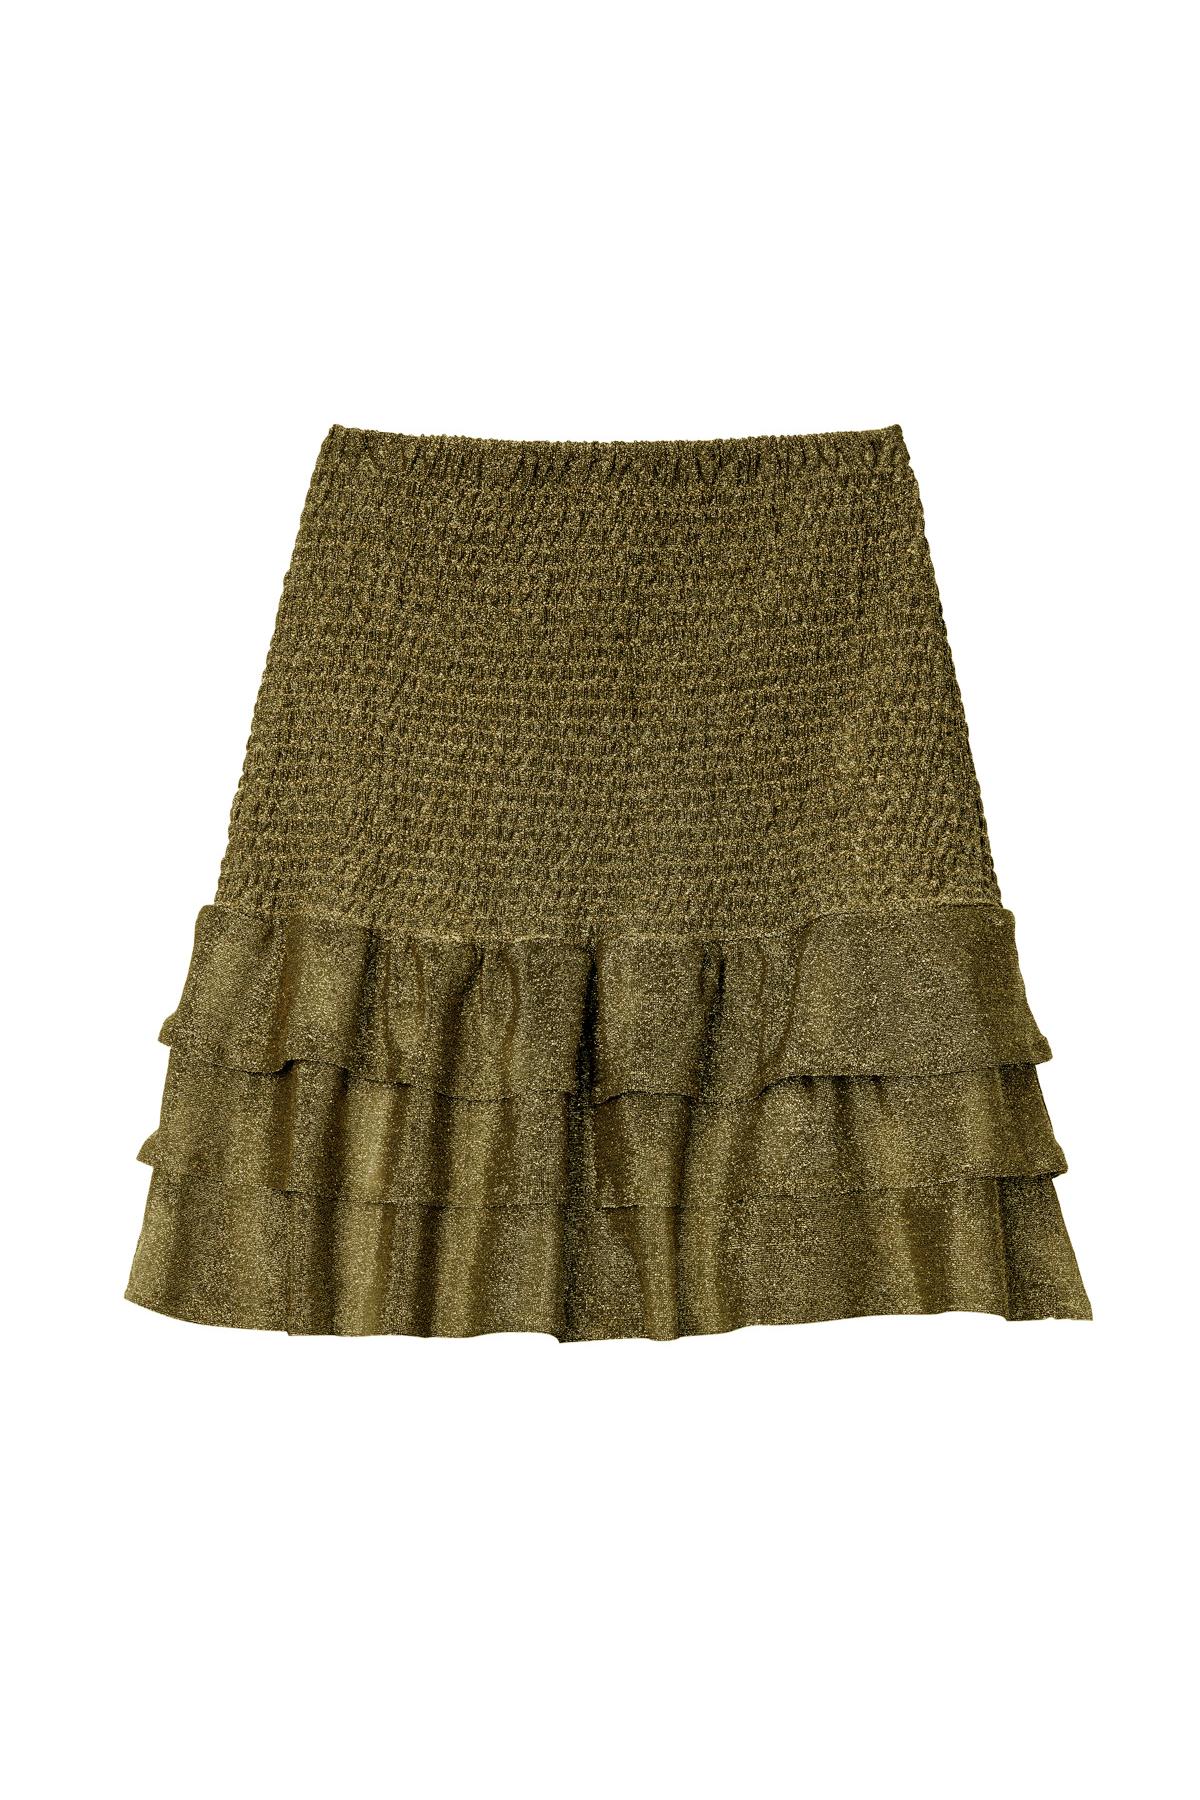 Skirt Festive Gold S h5 